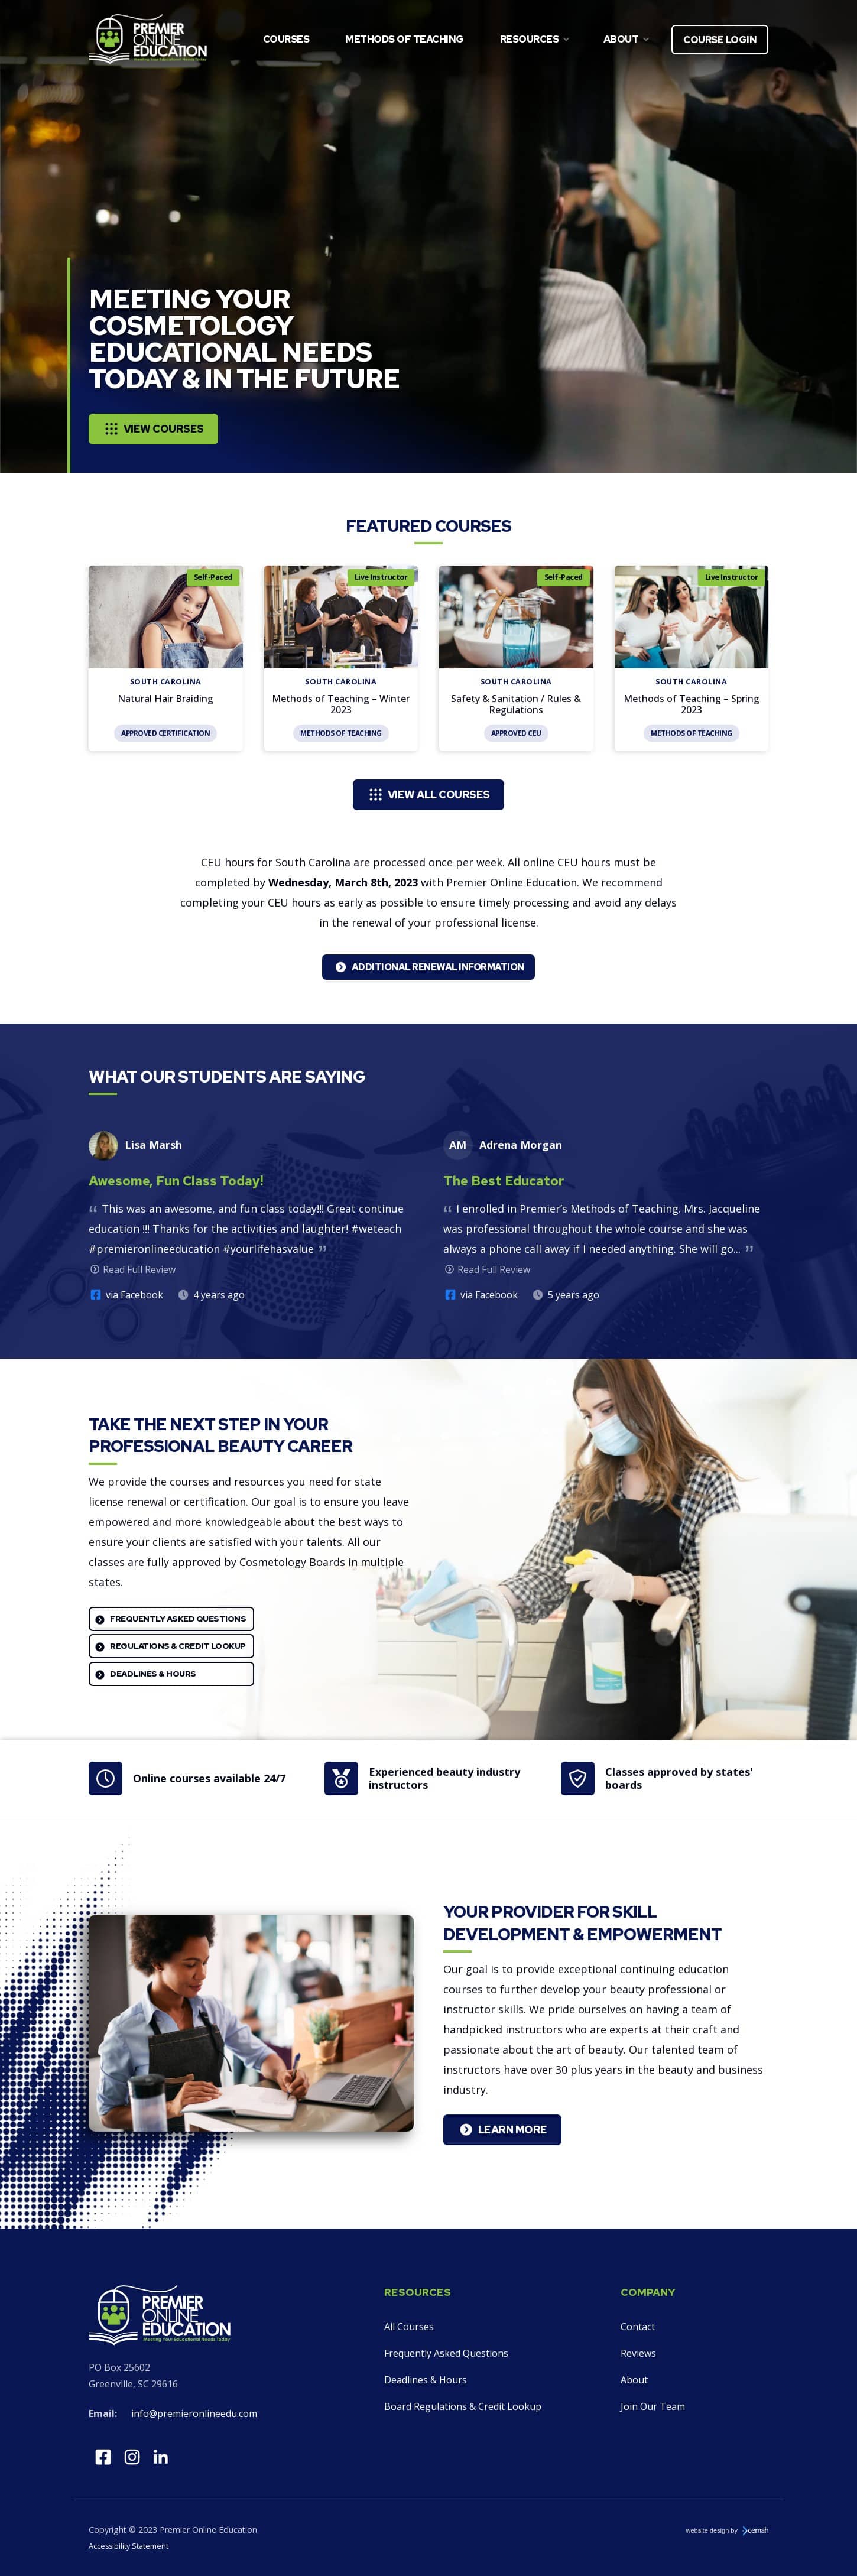 desktop screenshot of Premier Online Education homepage